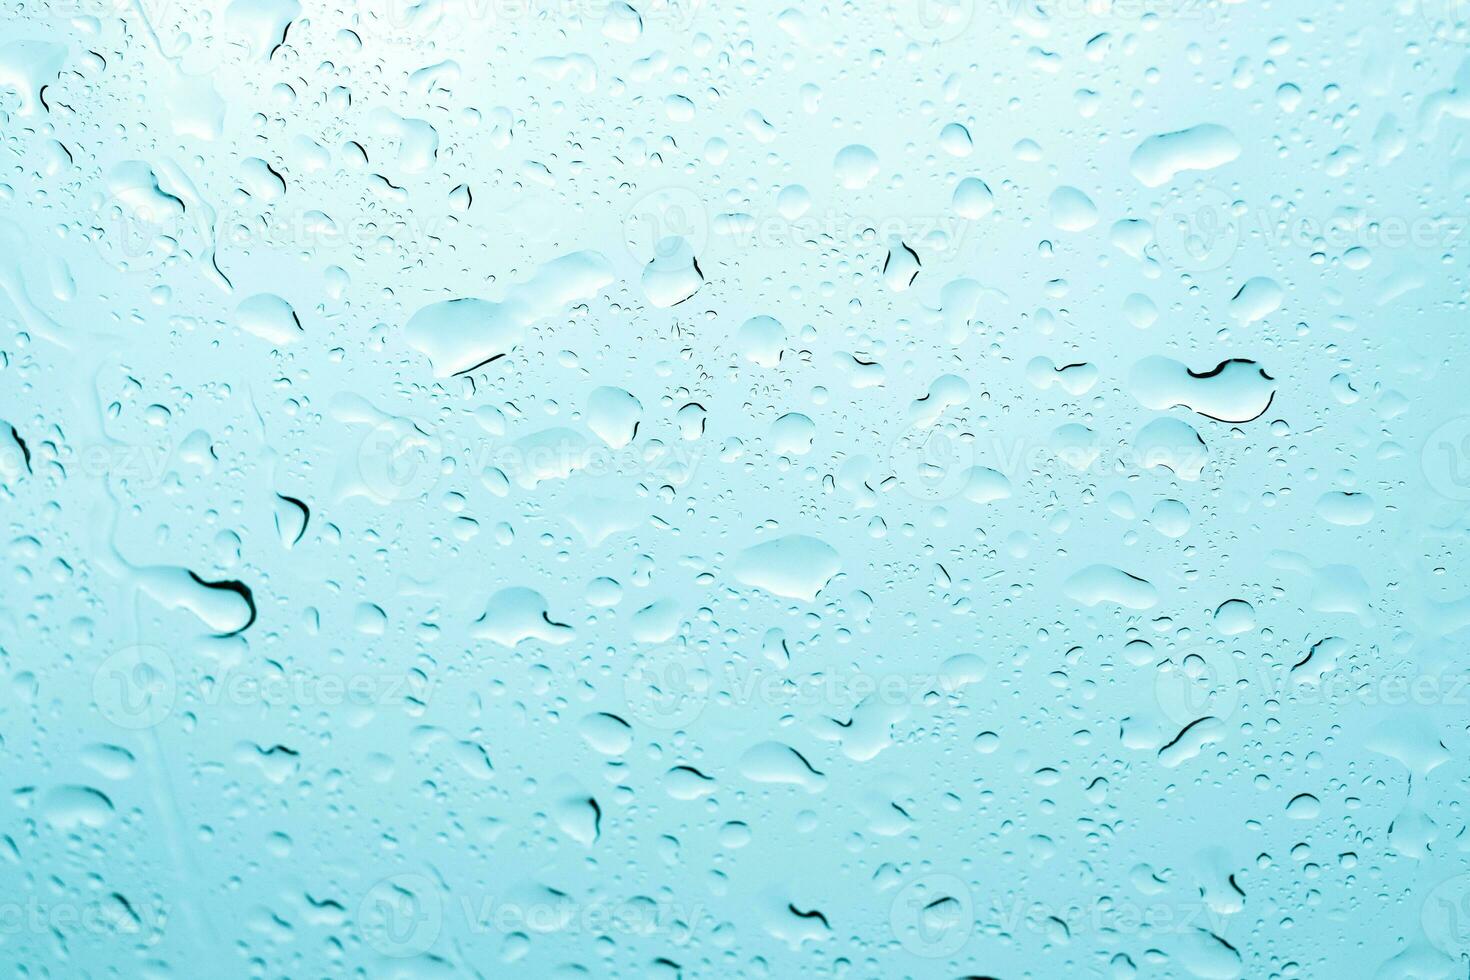 água da chuva cai no vidro da janela do carro foto